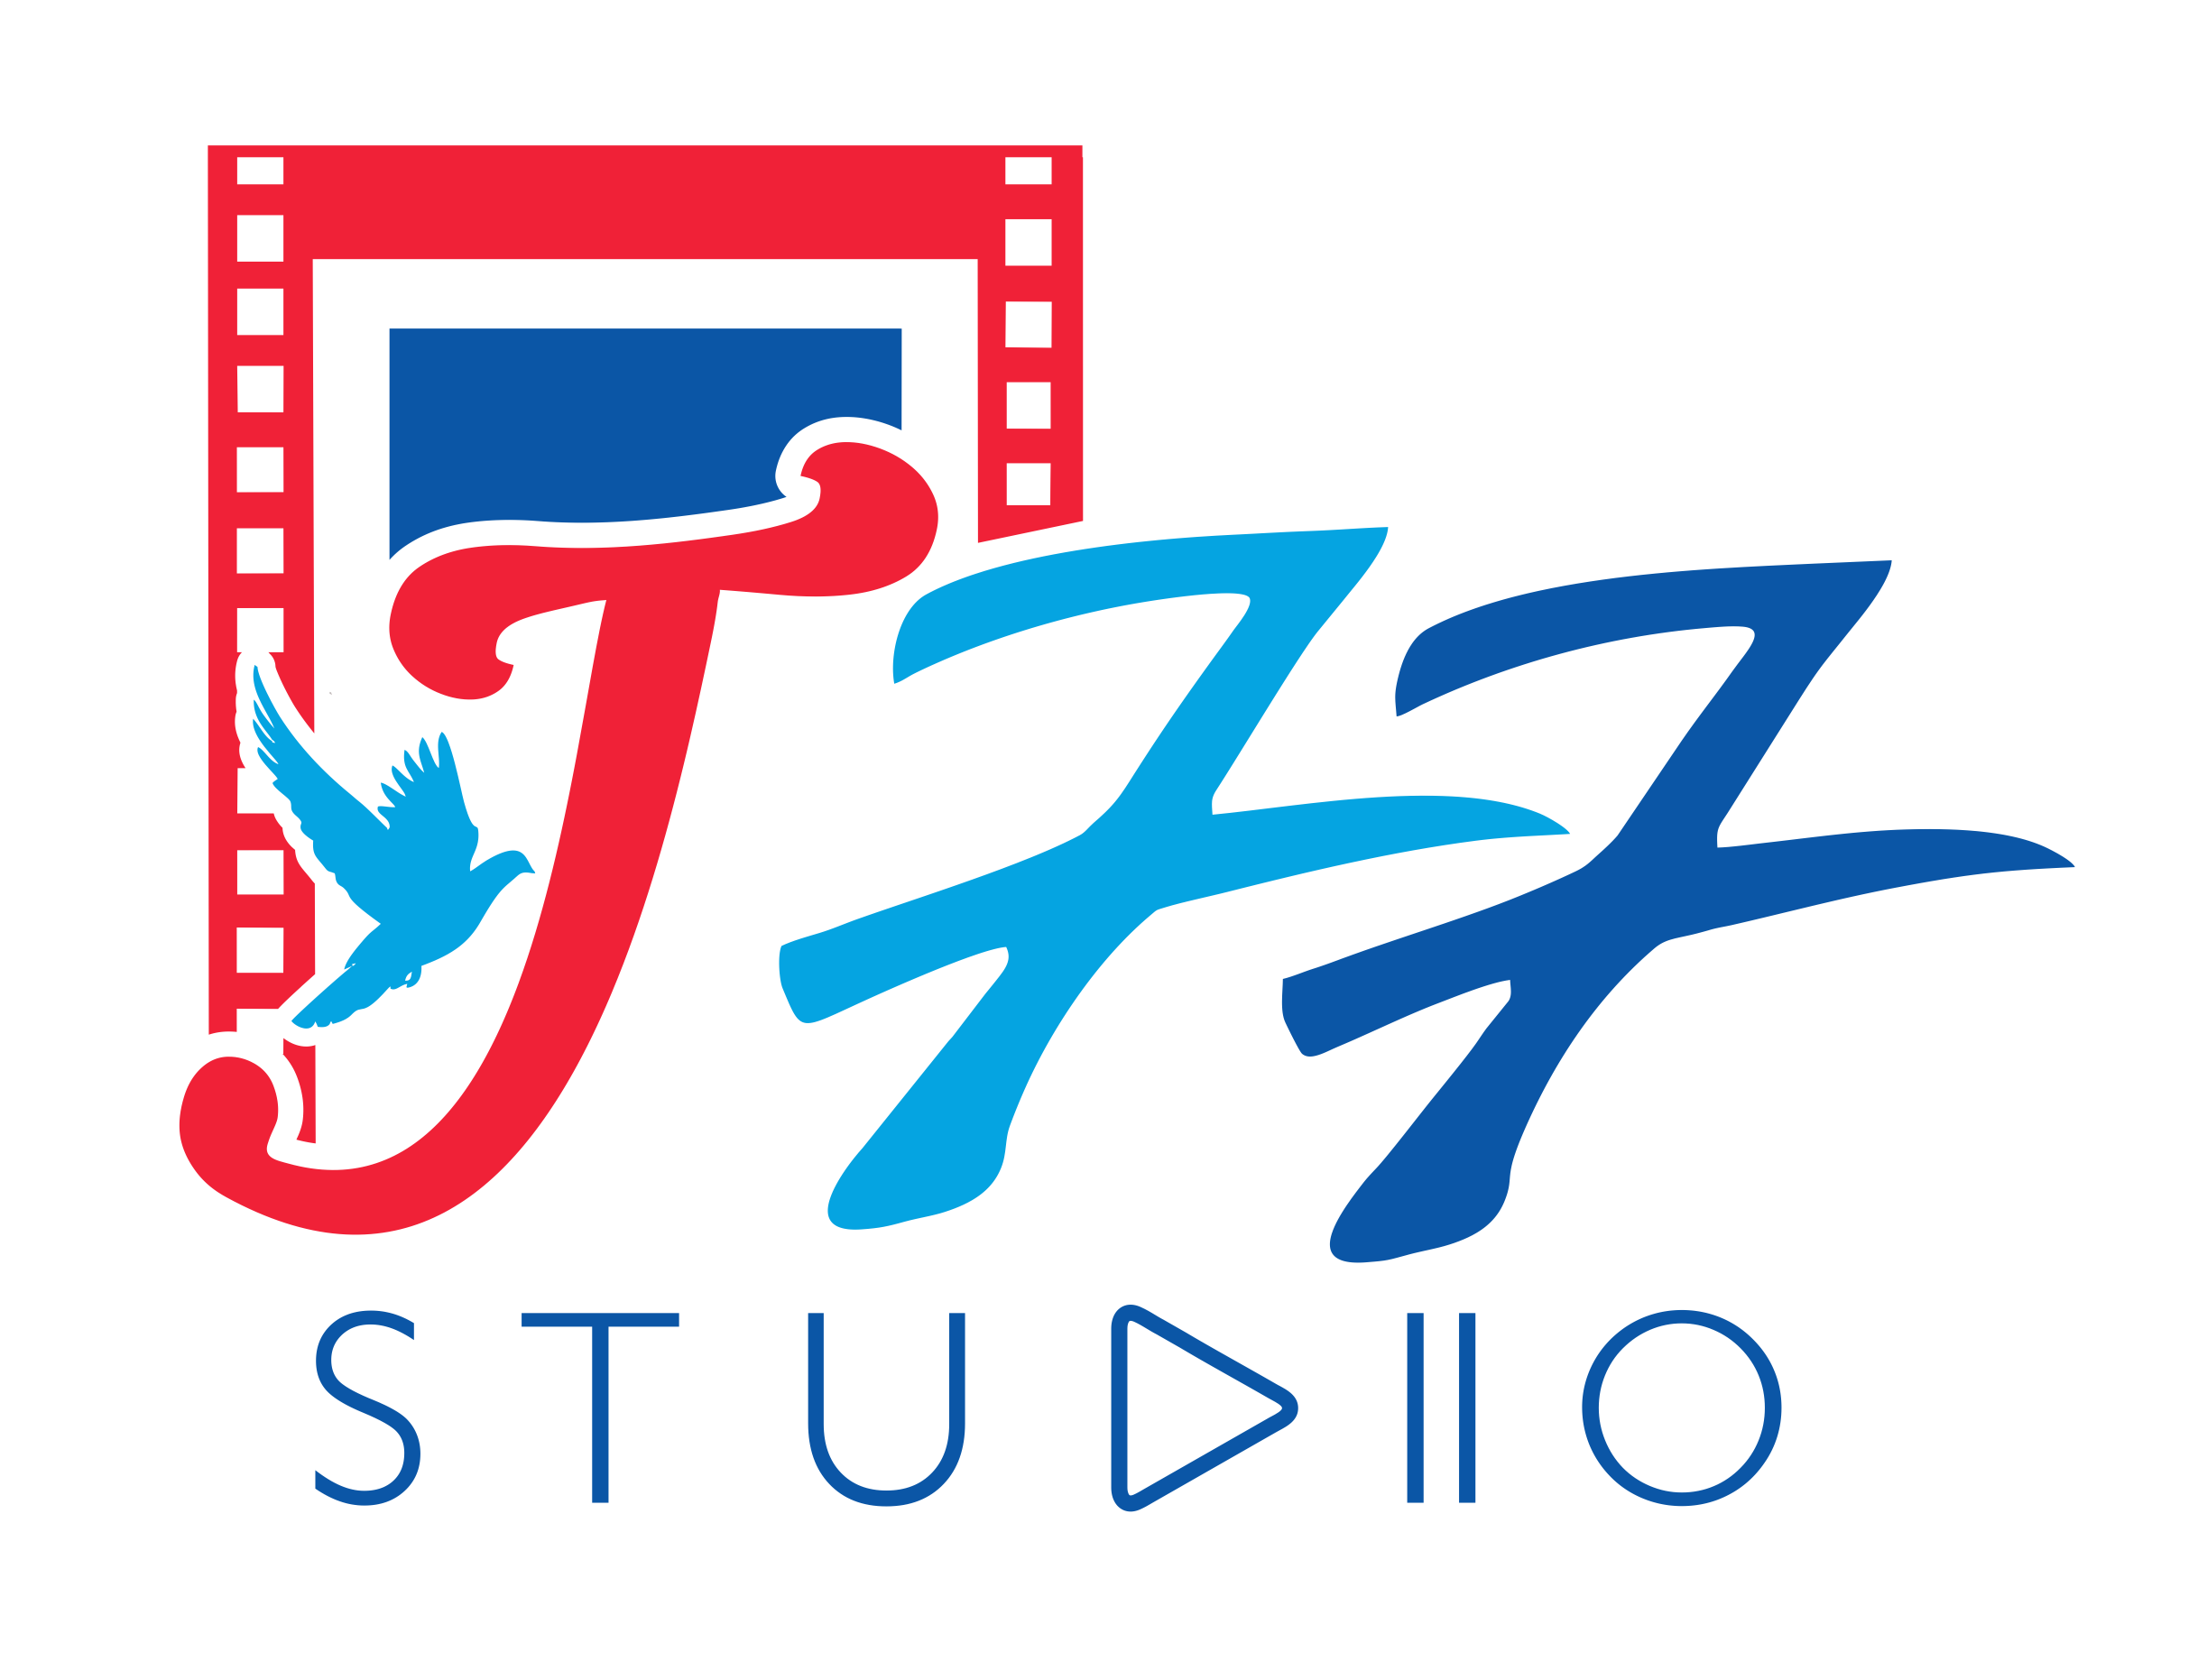 J77 Studio